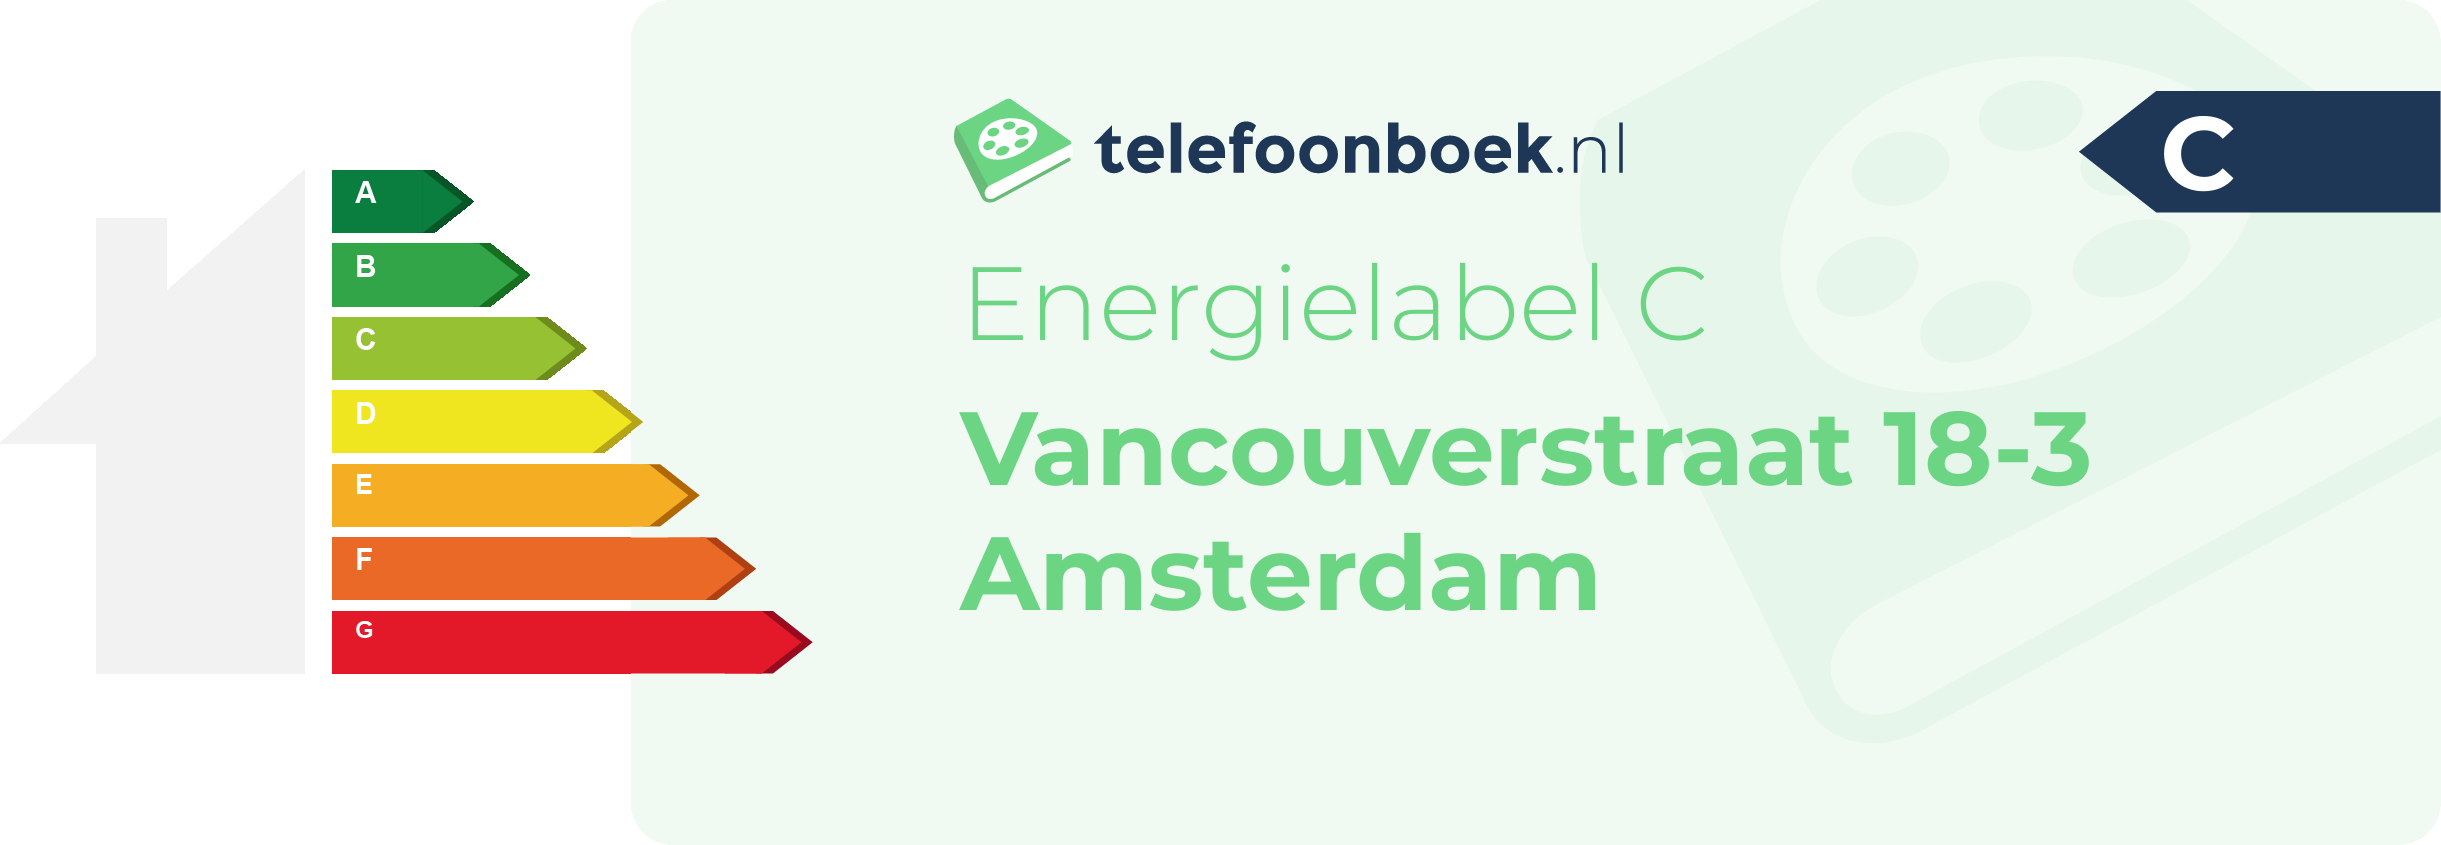 Energielabel Vancouverstraat 18-3 Amsterdam